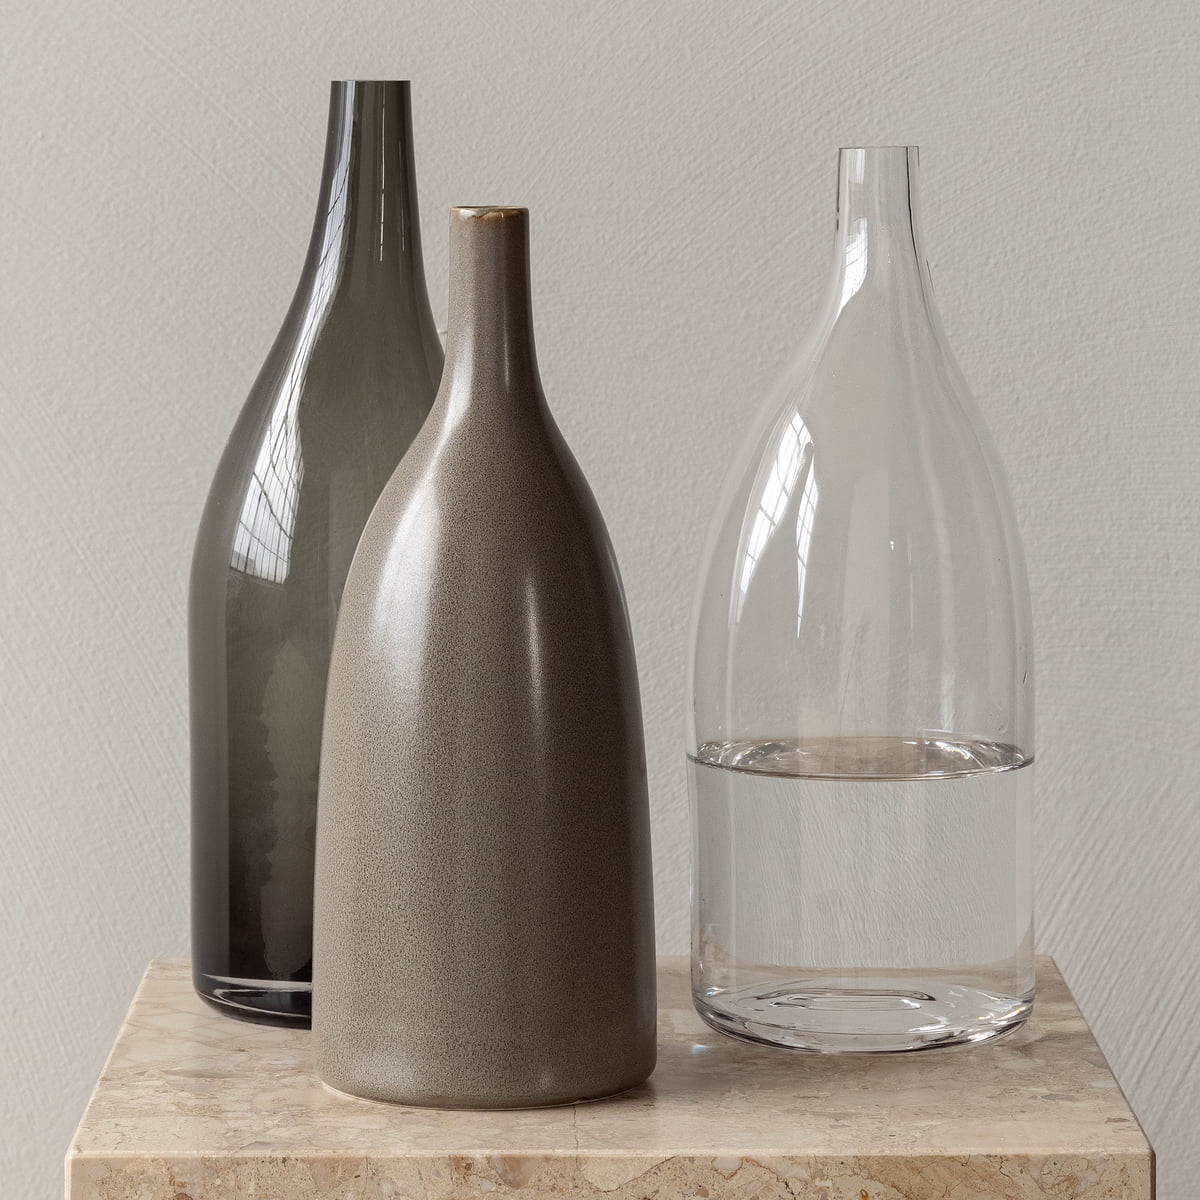 Strandgade Carafe  Asymmetrical glass carafe by Mentze Ottenstein